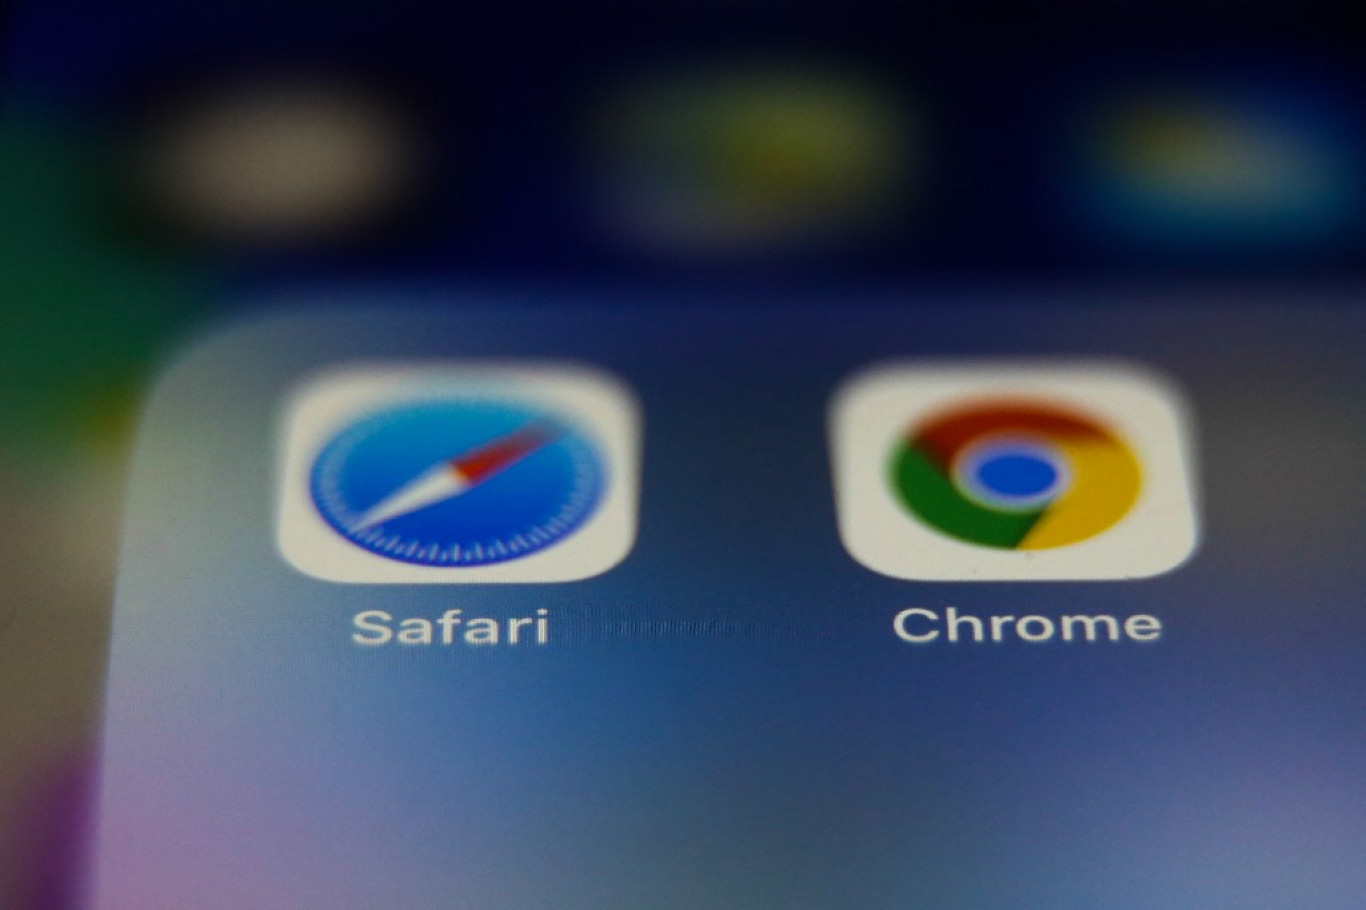 Csillagászati összegeket fizet a Google az Apple-nek, hogy a Safari keresőmotorja lehessen